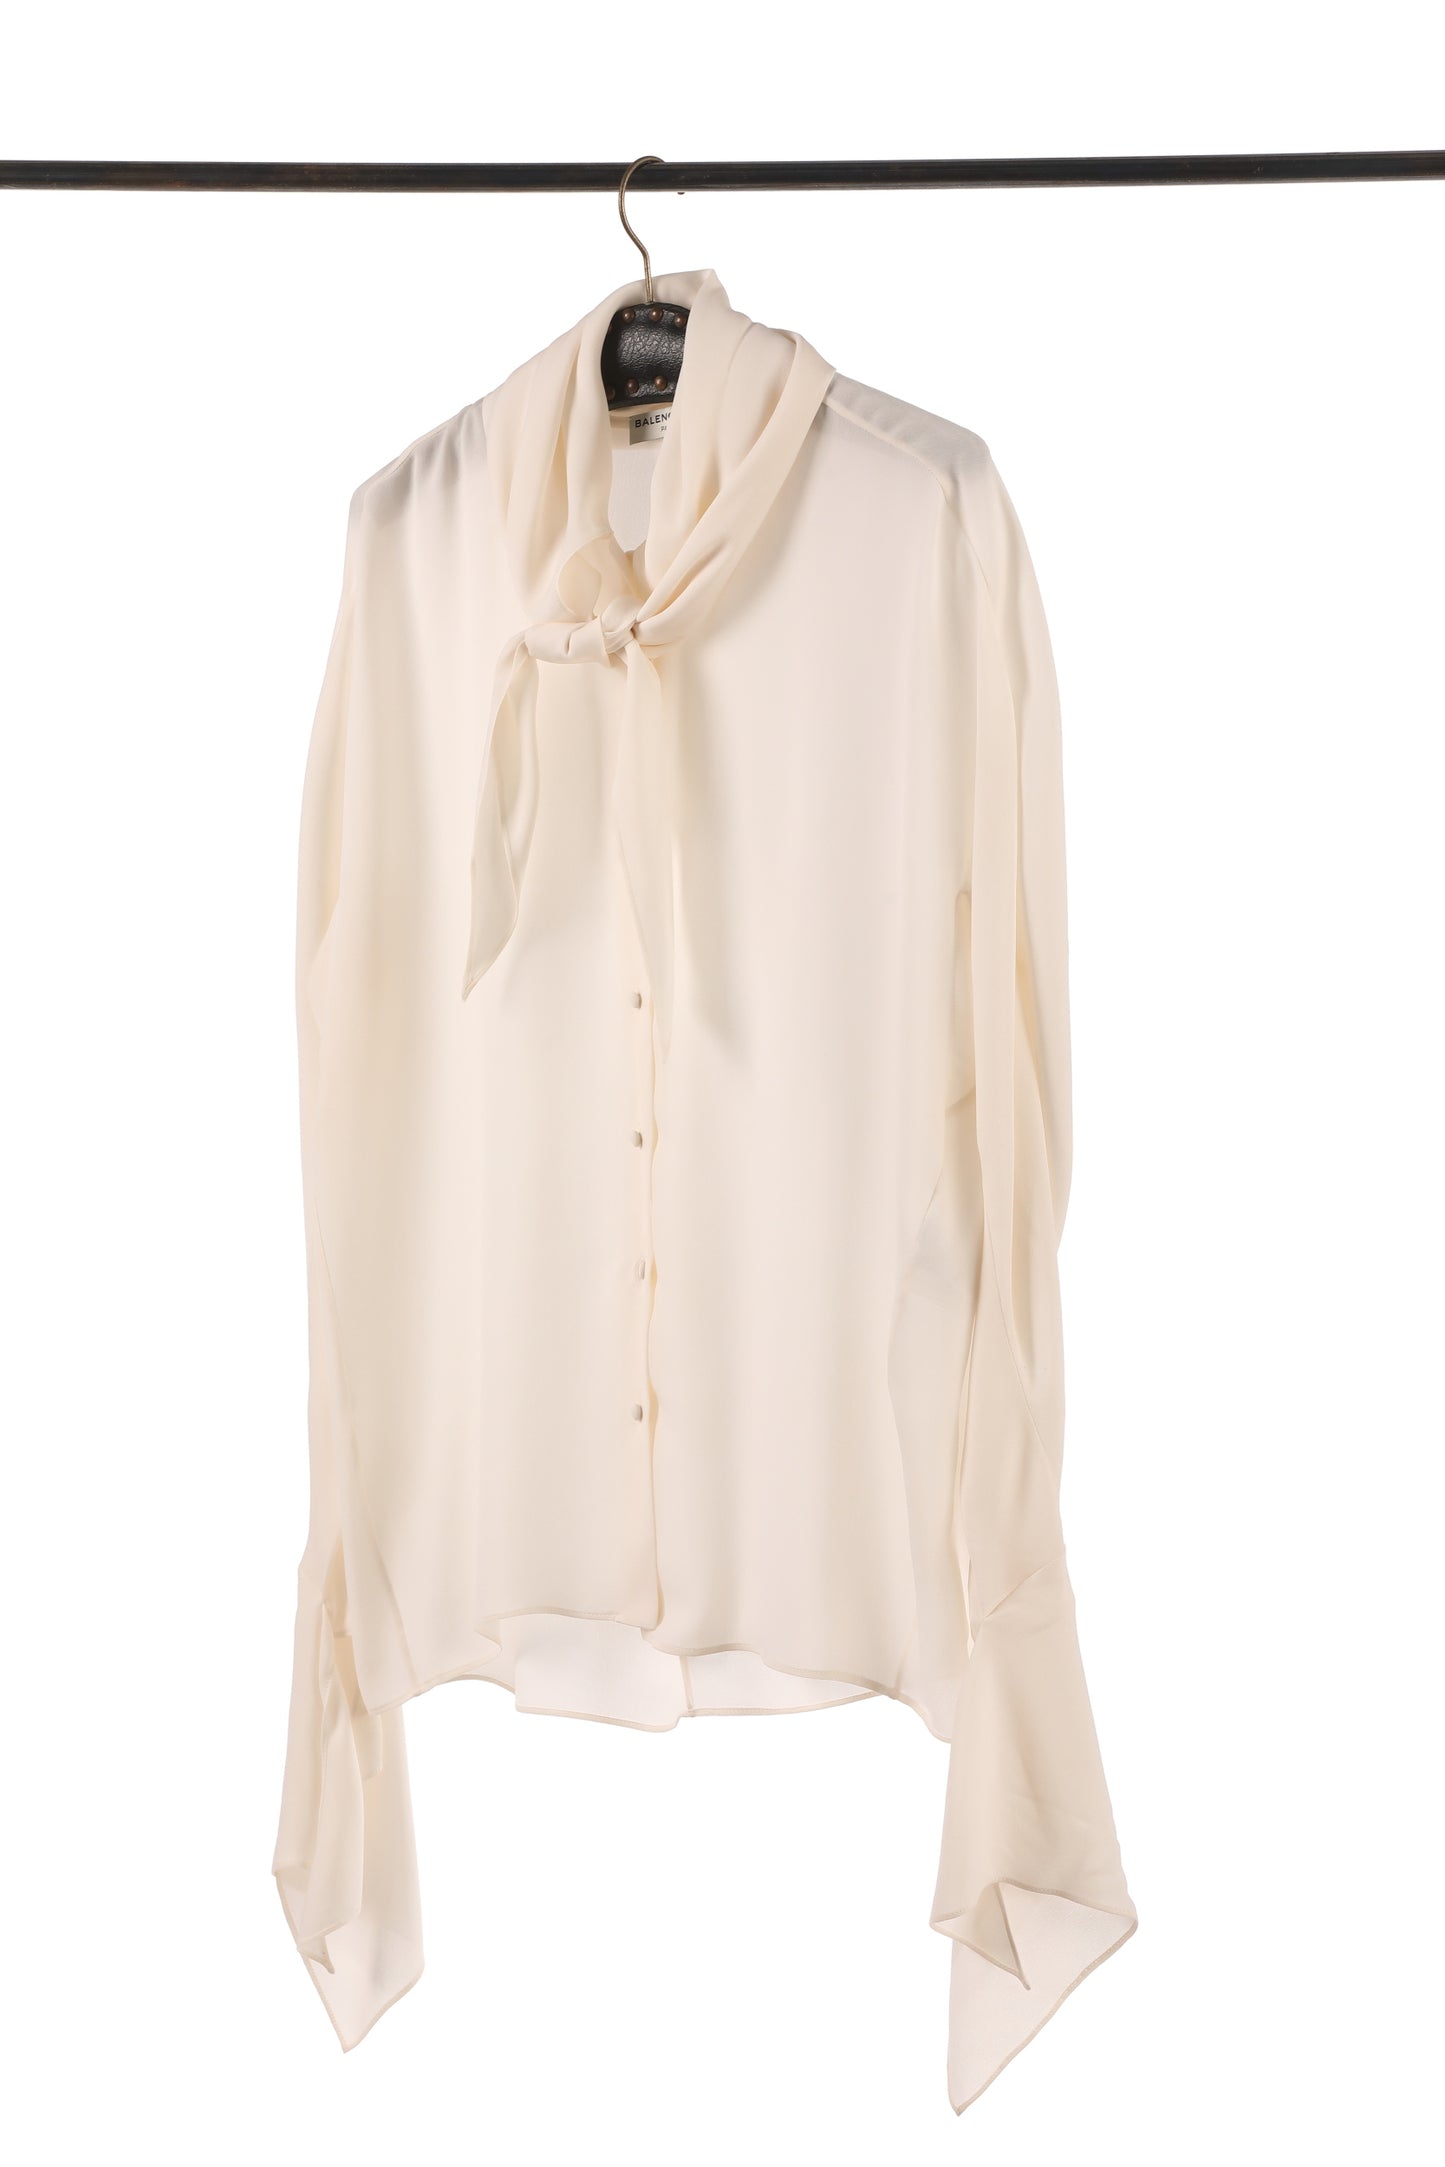 Balenciaga Paris ivory silk shirt